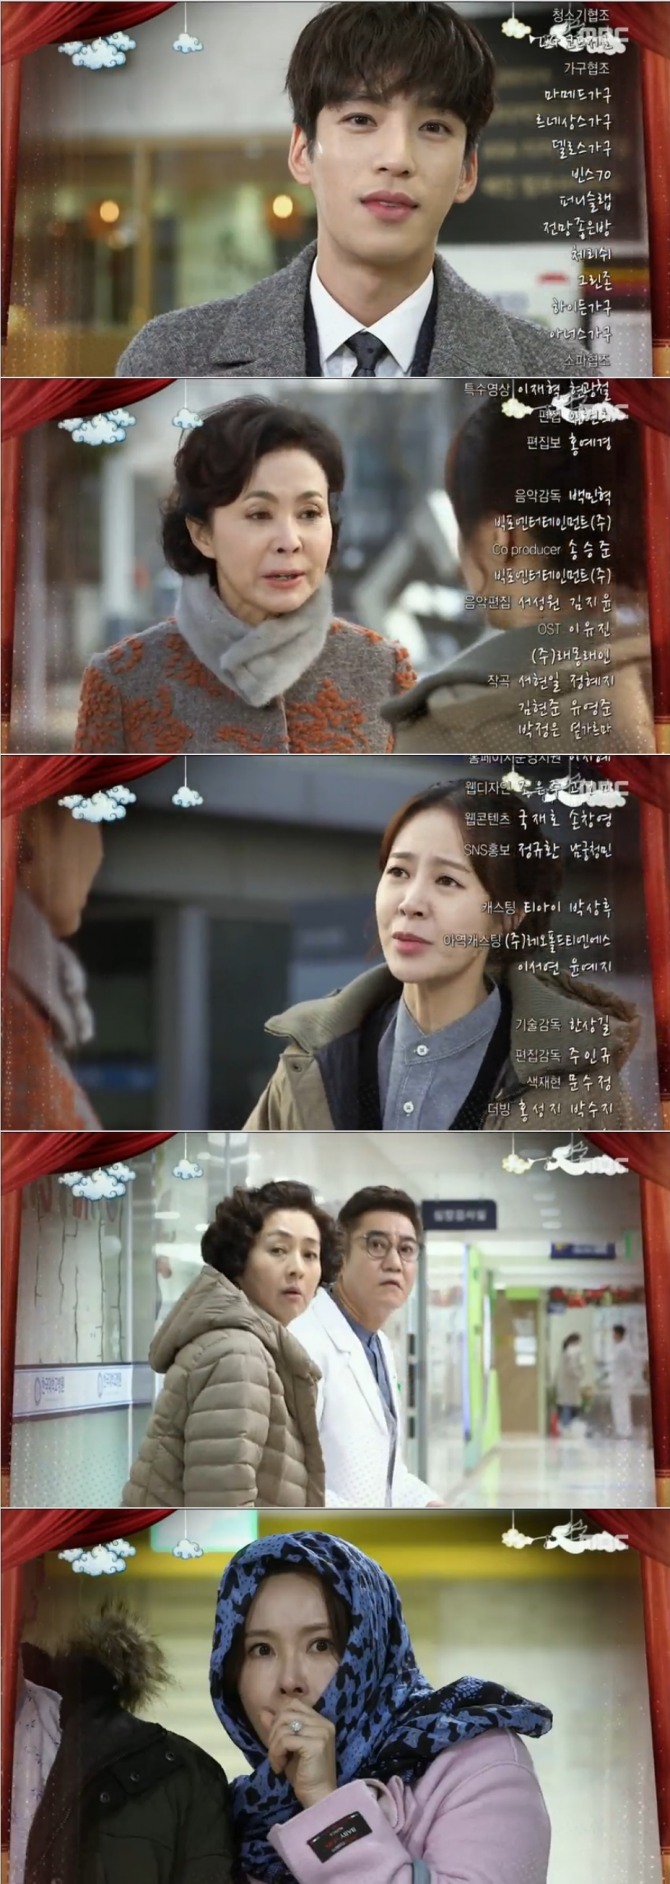 16일 밤 방송되는 MBC 일일드라마 '전생에 웬수들' 37회에서는 오나라(최수린)가 병원에서 전남편 한재웅(한갑수)와 정면으로 마주칠 위기에 처한다. 사진=MBC 영상 캡처